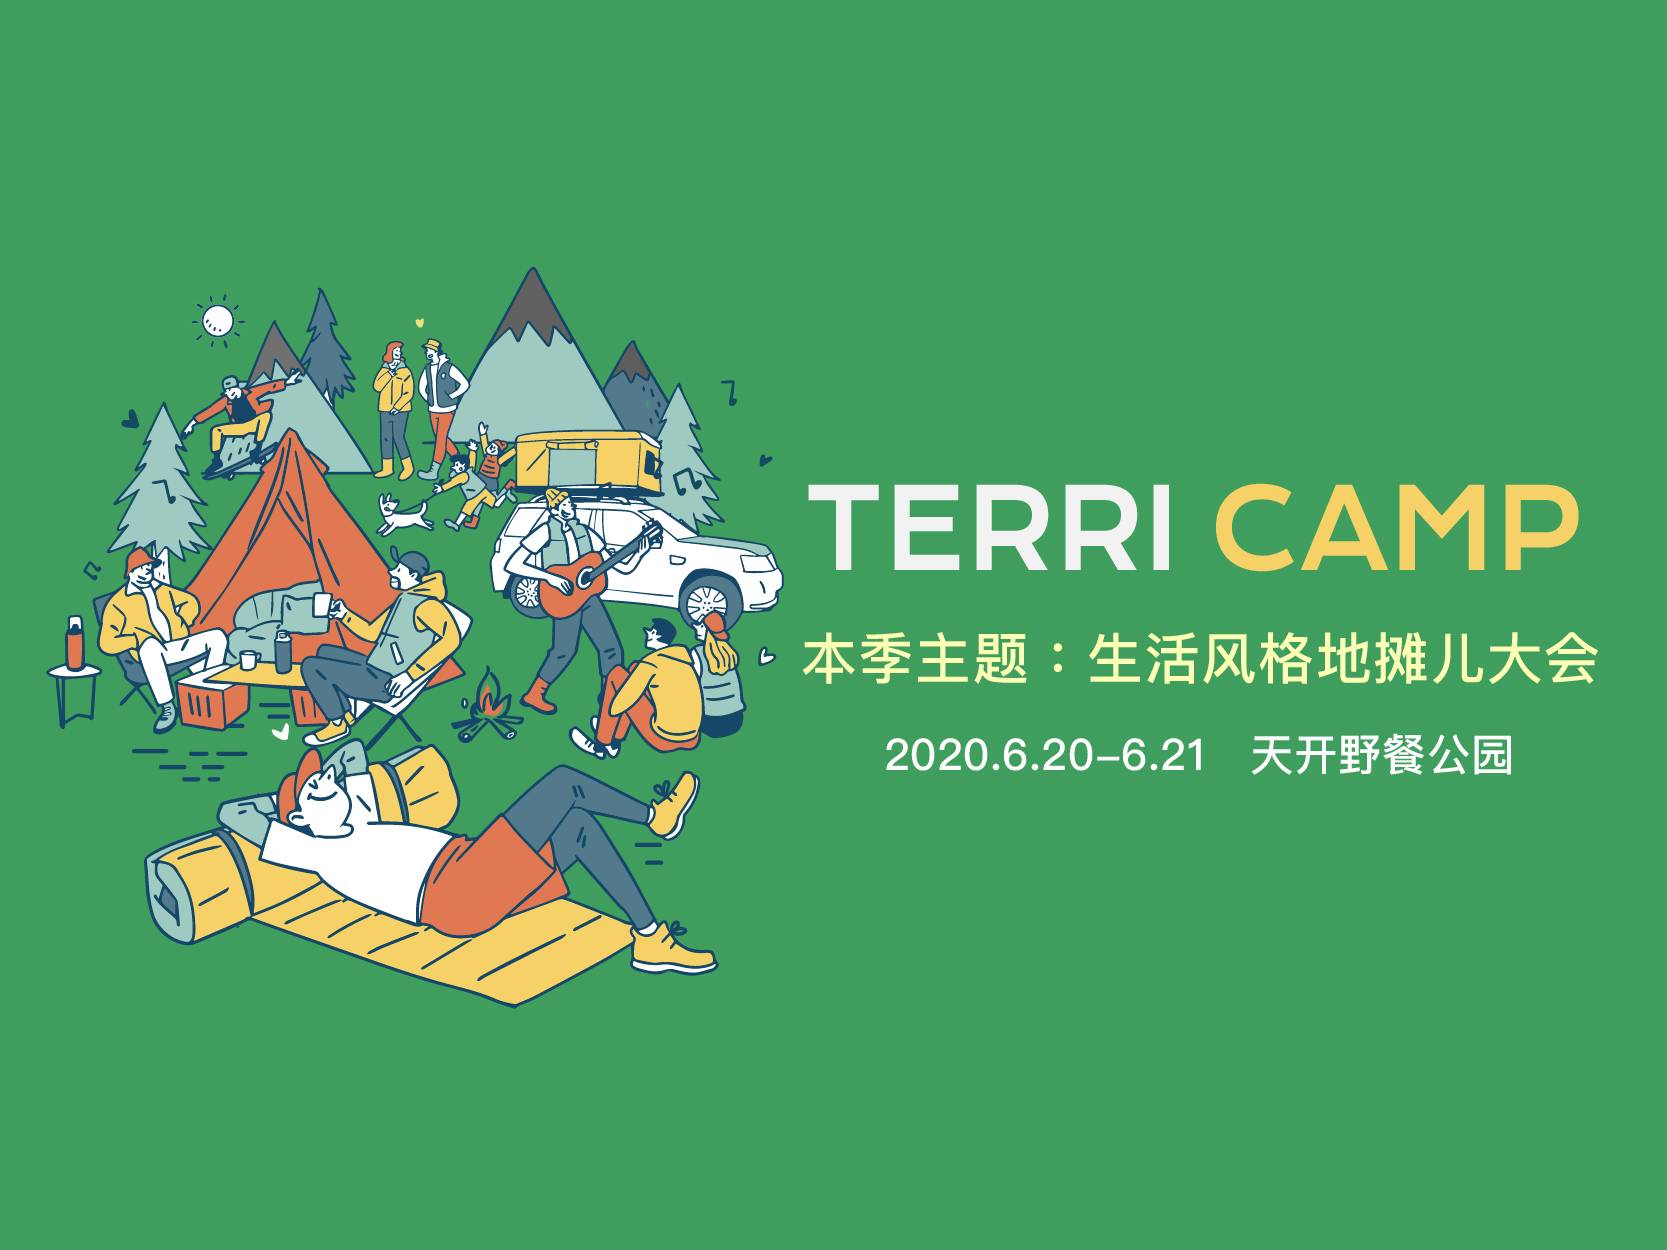 天空下的周末升级为TERRI CAMP，本季主题「生活风格地摊儿大会」